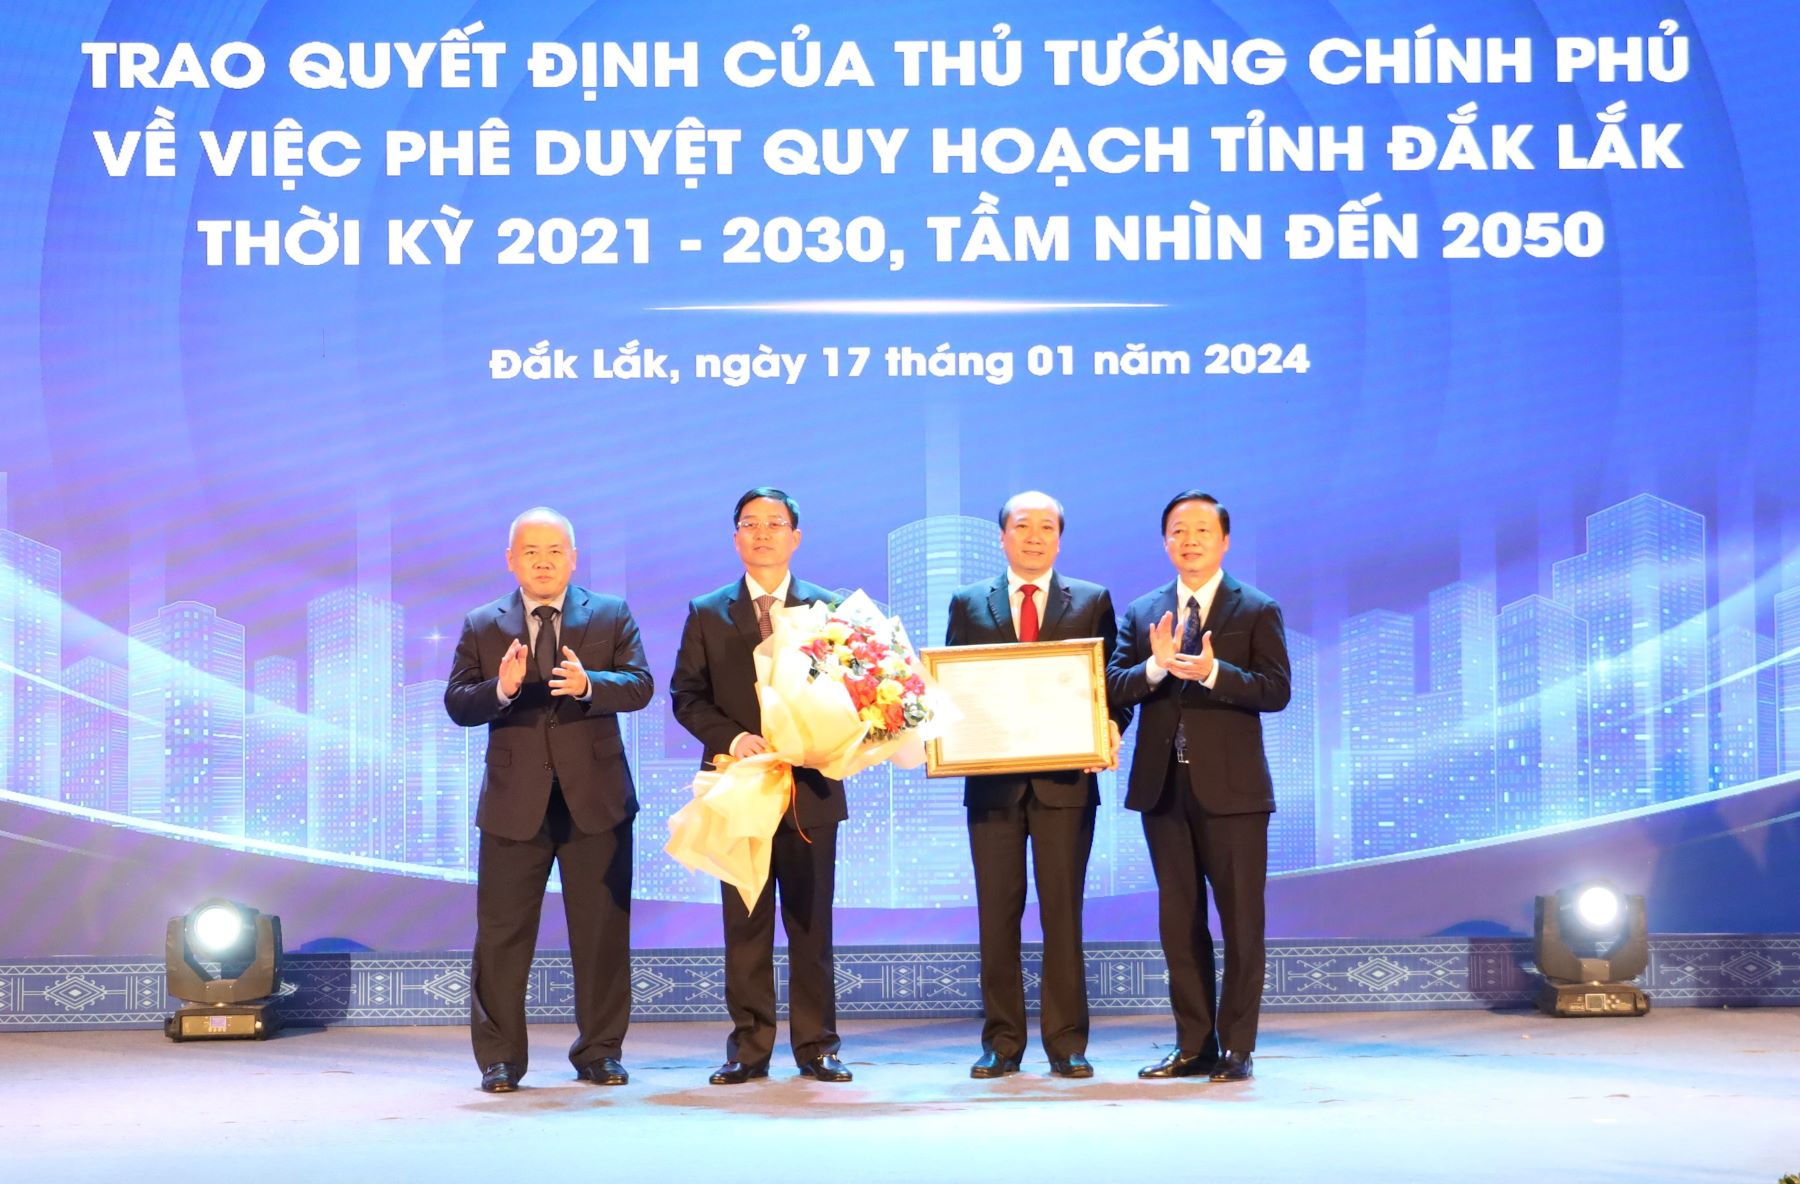 Công bố Quy hoạch tỉnh Đắk Lắk thời kỳ 2021-2030, tầm nhìn đến năm 2050